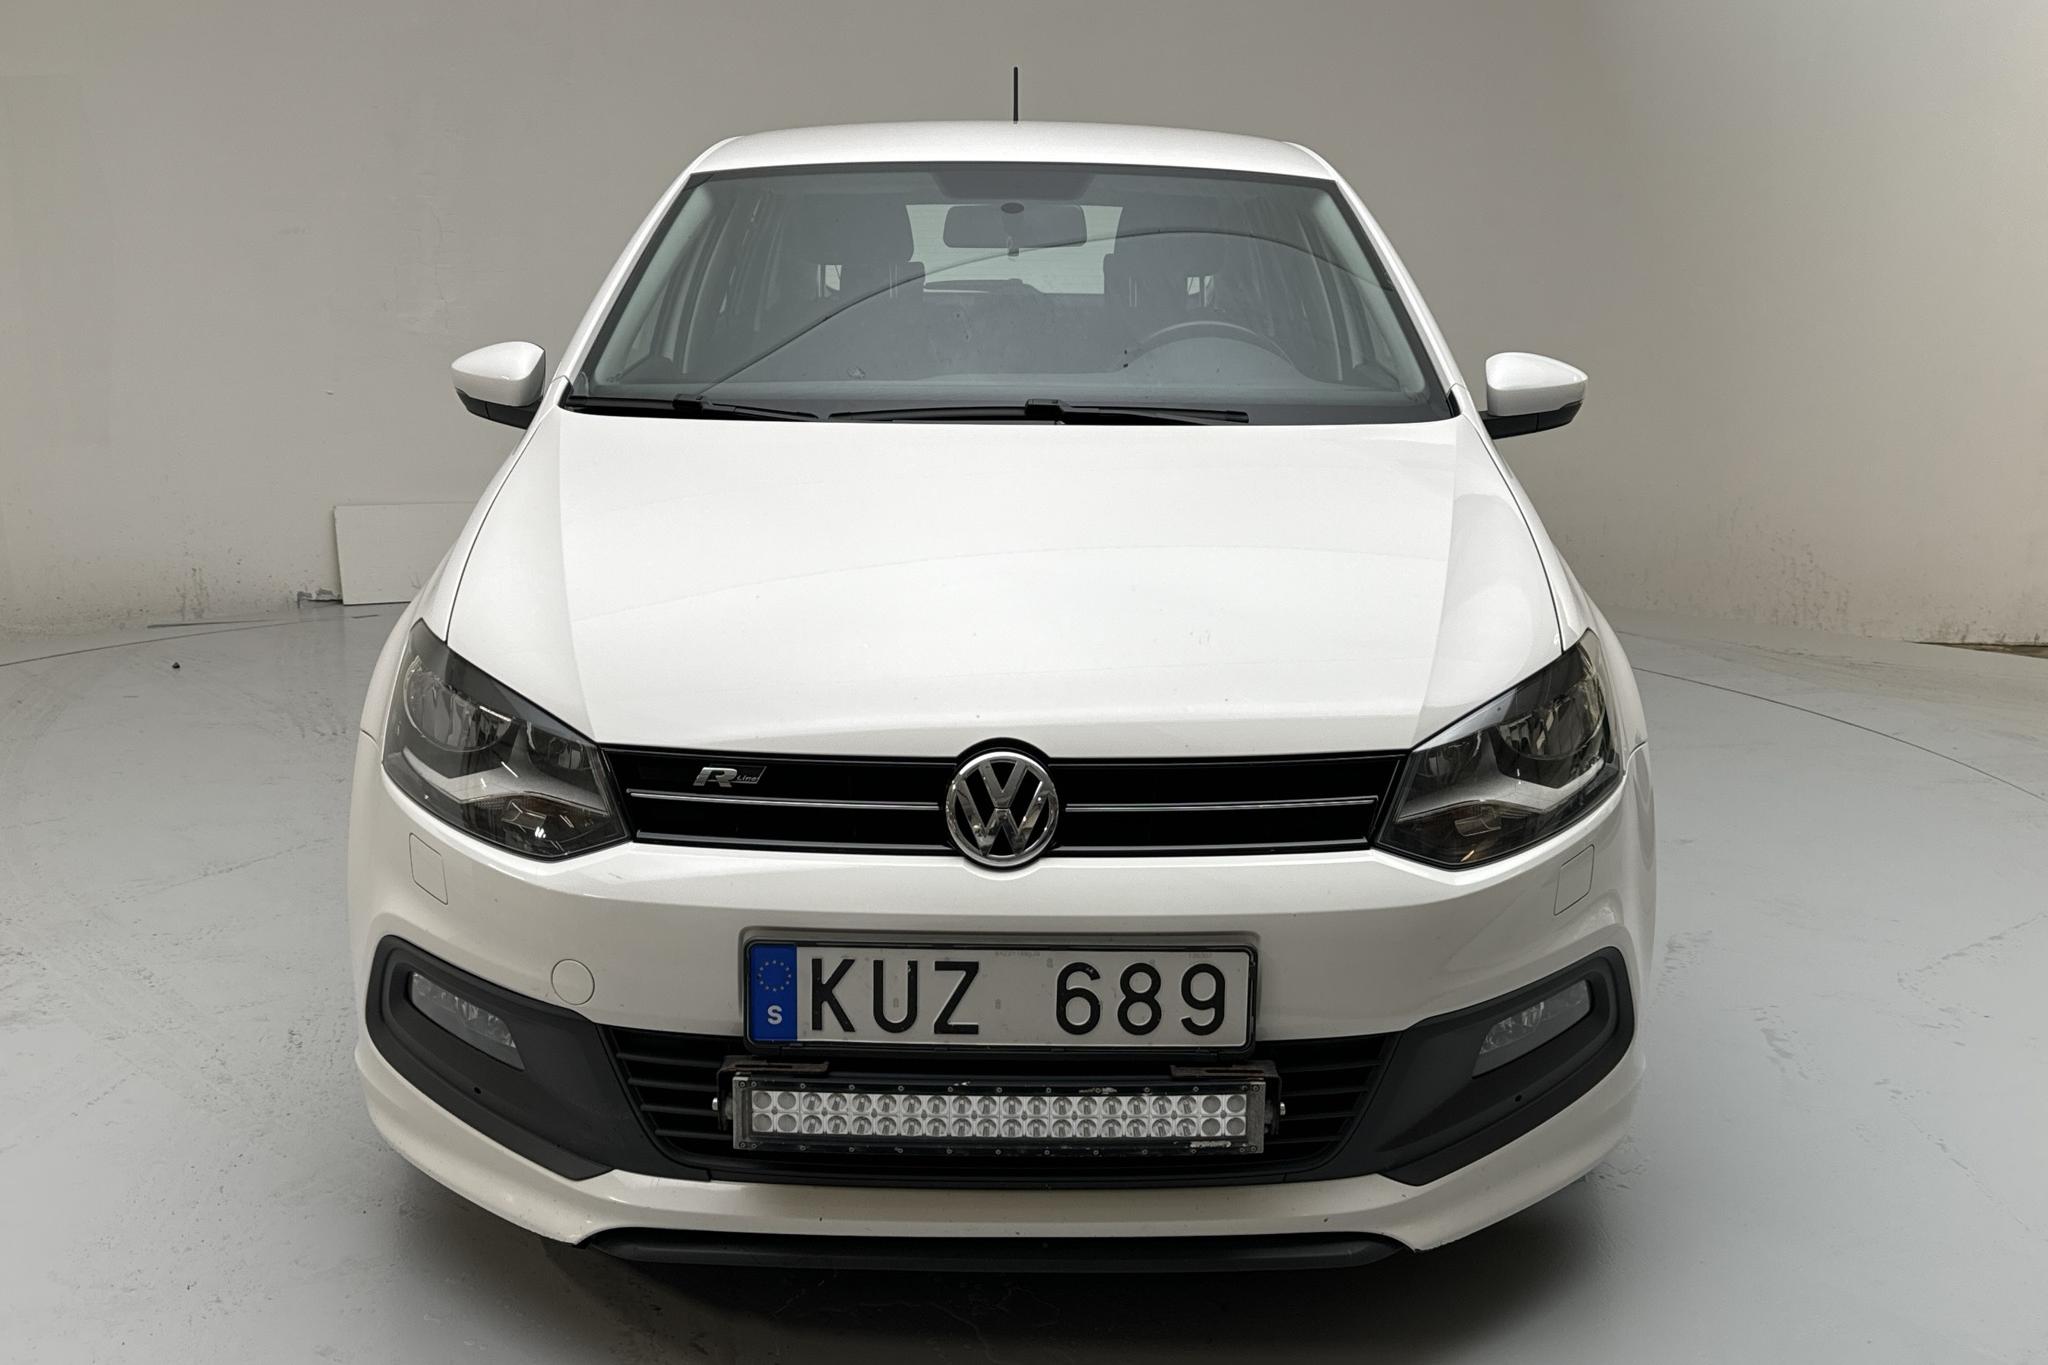 VW Polo 1.2 TSI 5dr (90hk) - 170 030 km - Manualna - biały - 2013